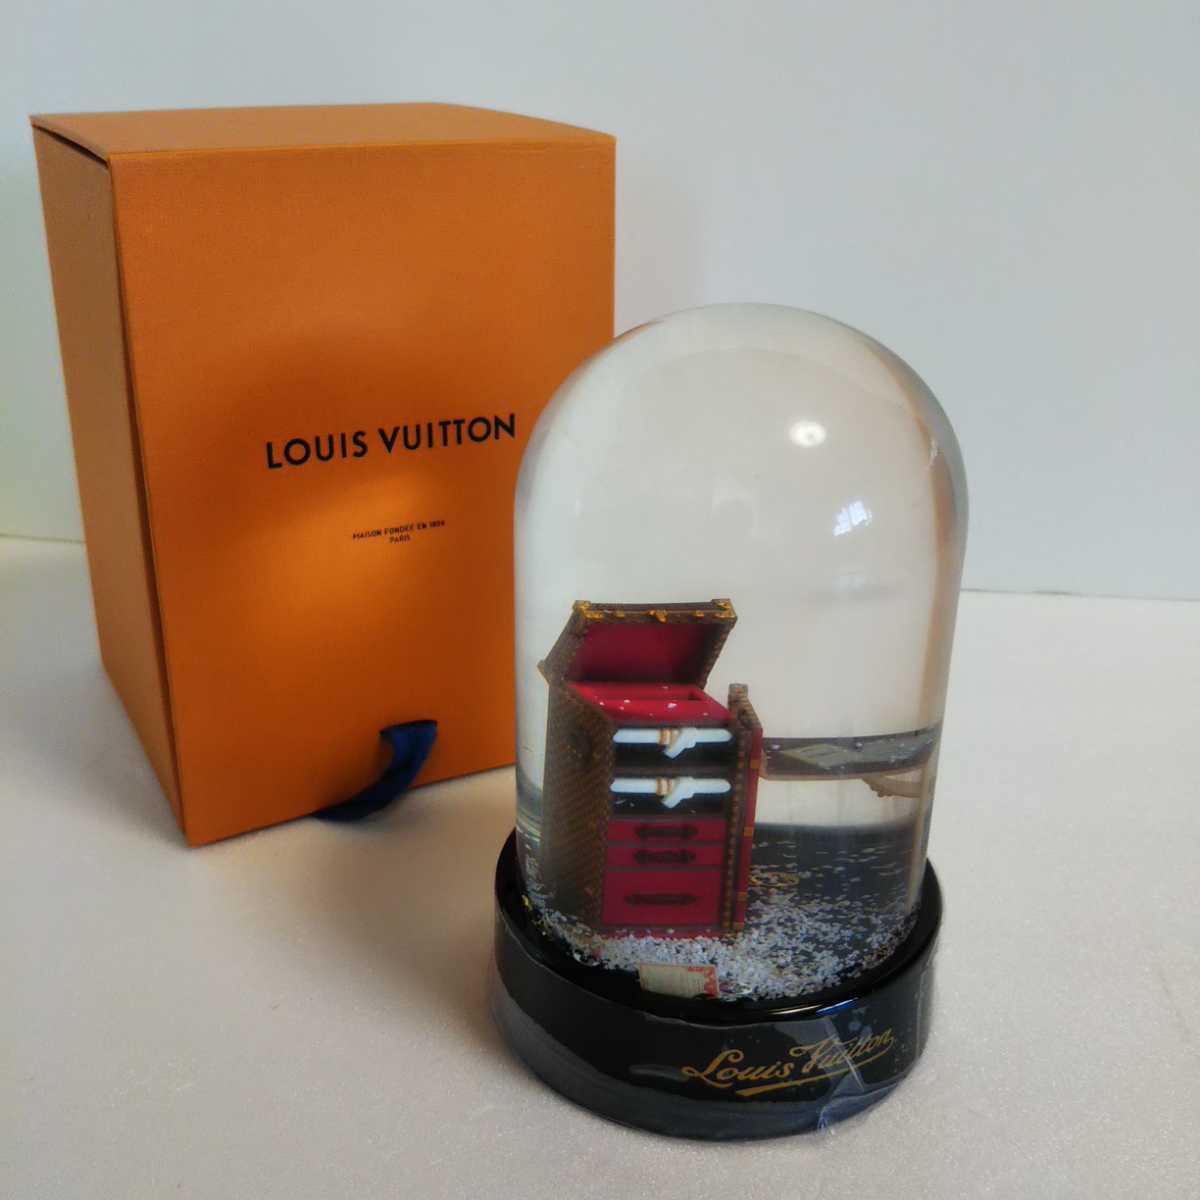 Louis Vuitton Delightful MM vs. Neverfull MM  Comparison, Review, What  Fits, Mod Shots 